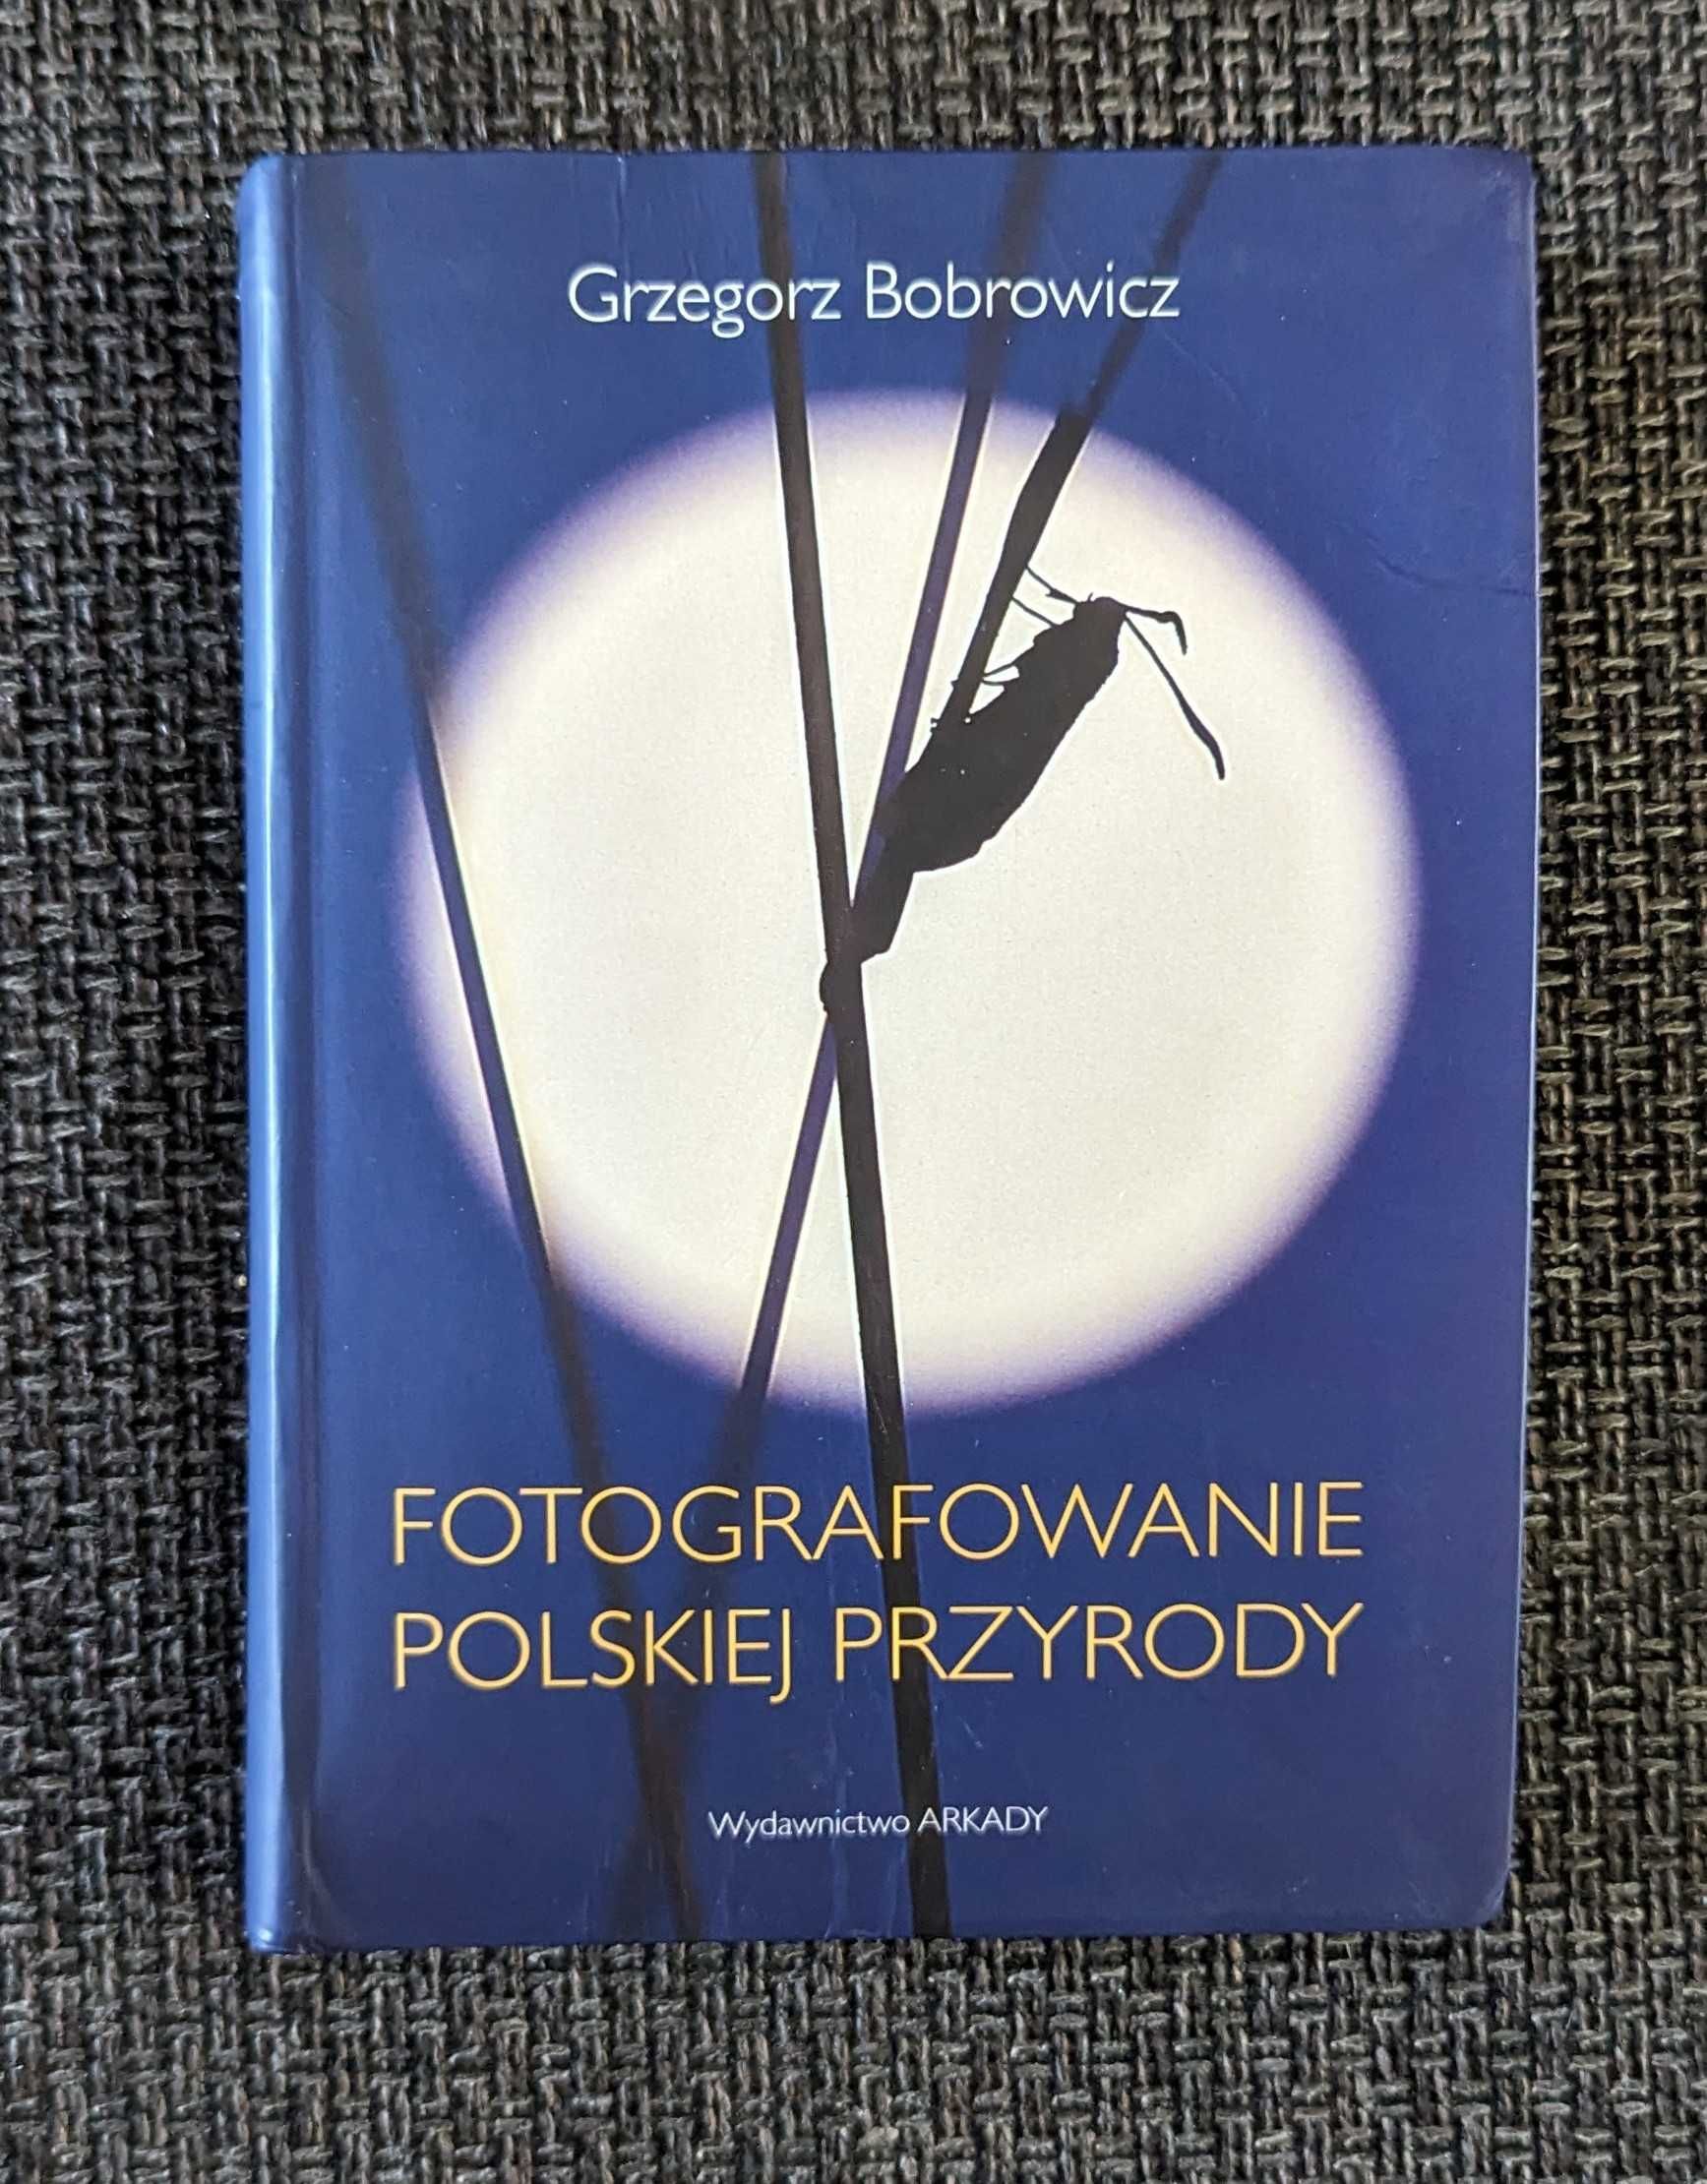 Fotografowanie polskiej przyrody, Grzegorz Bobrowicz